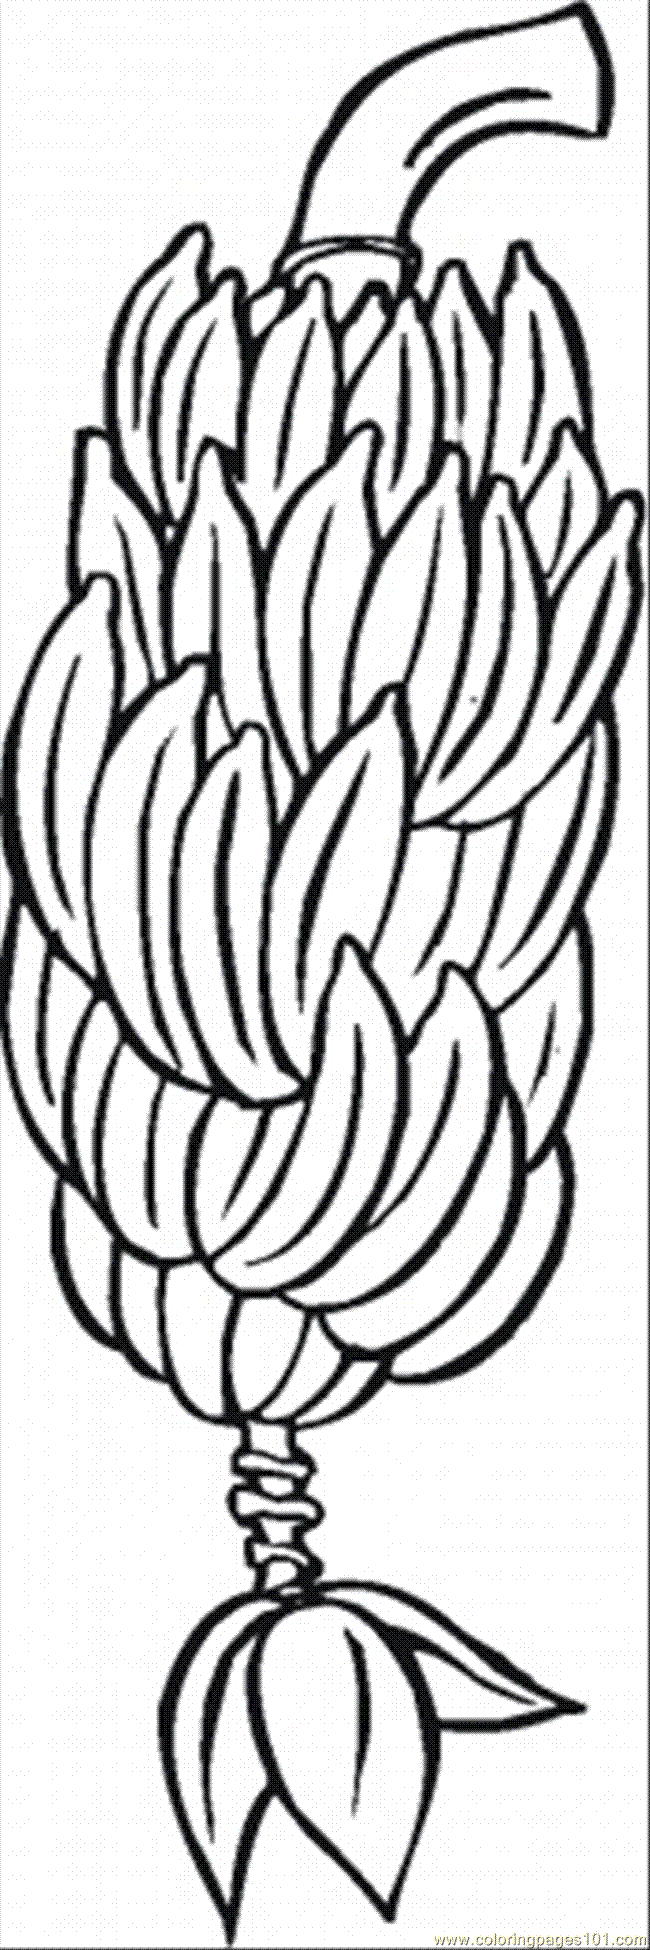 Clip Art Banana Tree